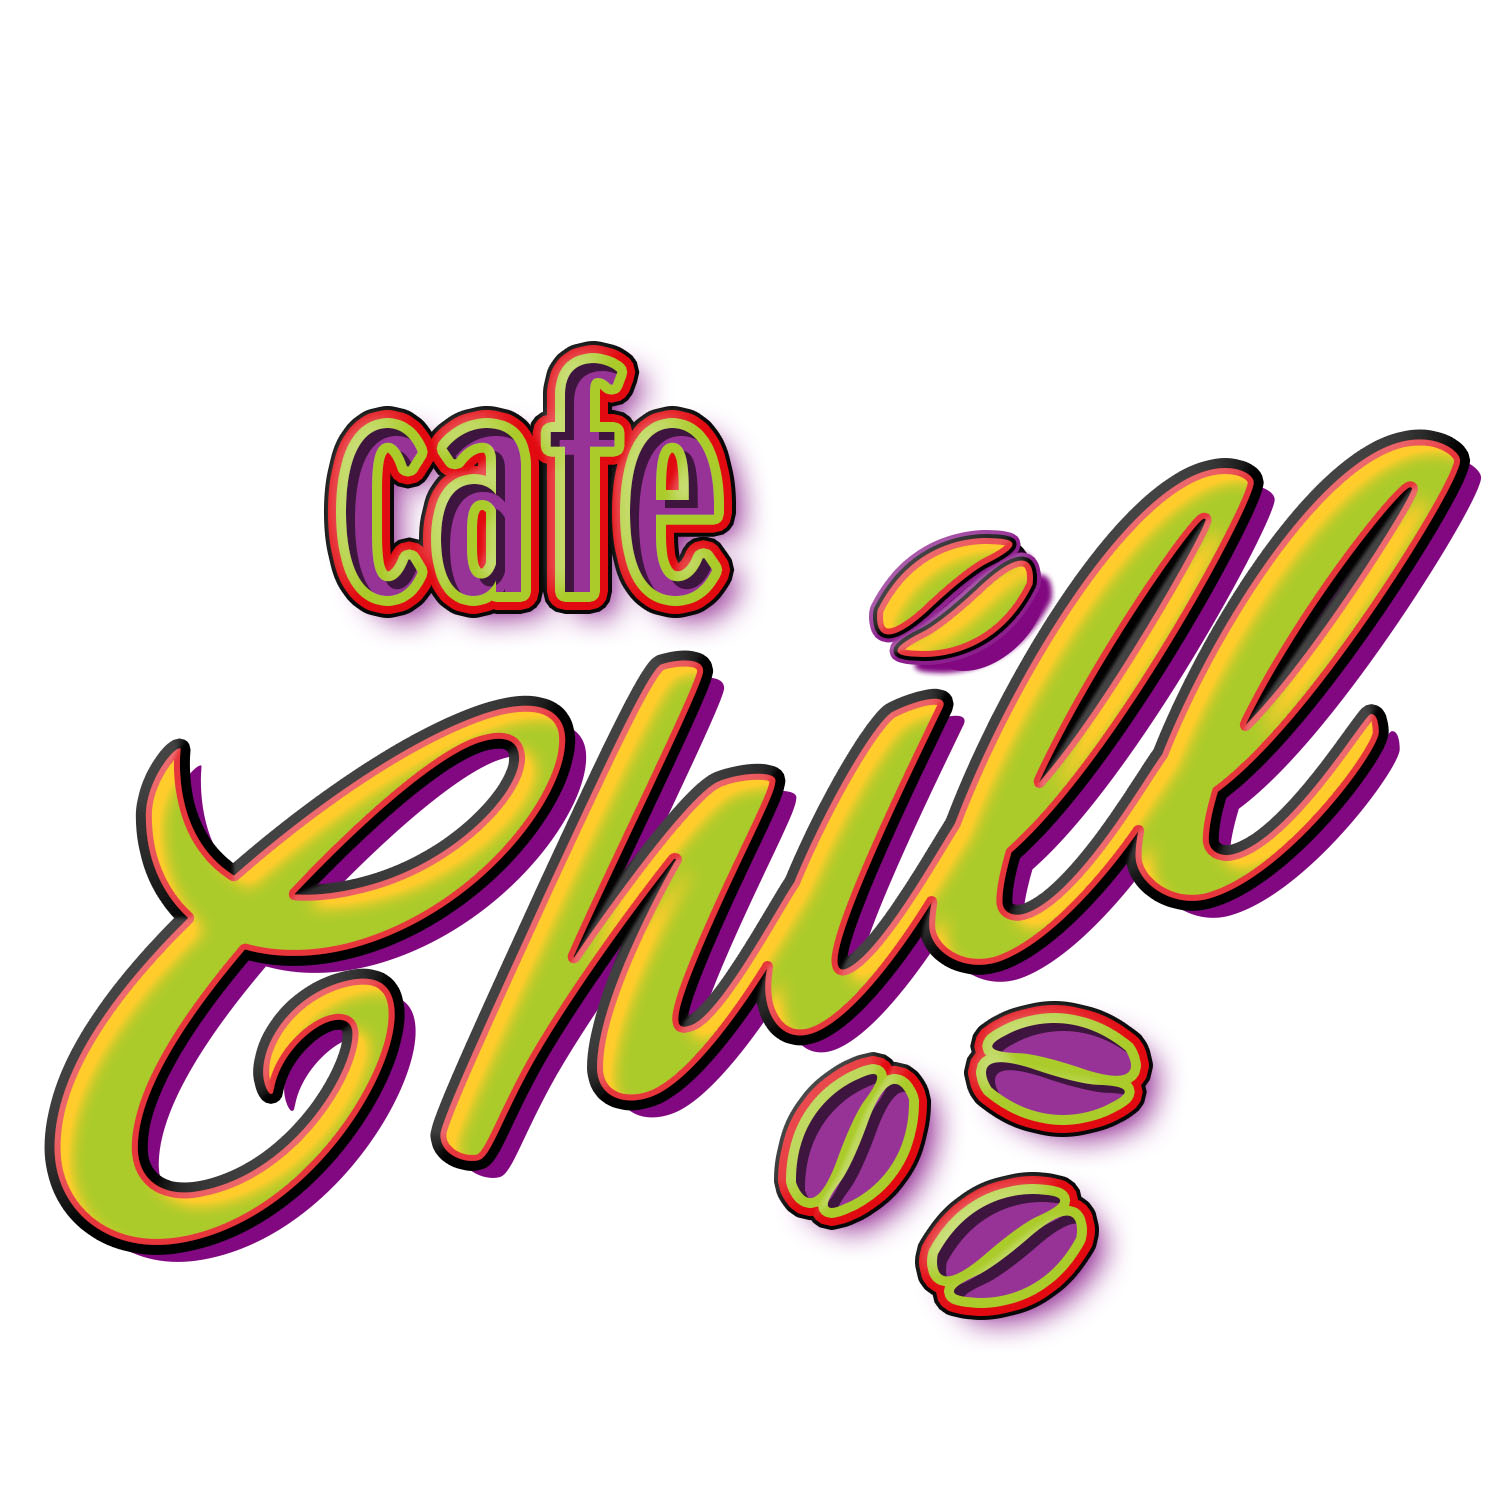 CafeChillLogo.jpg